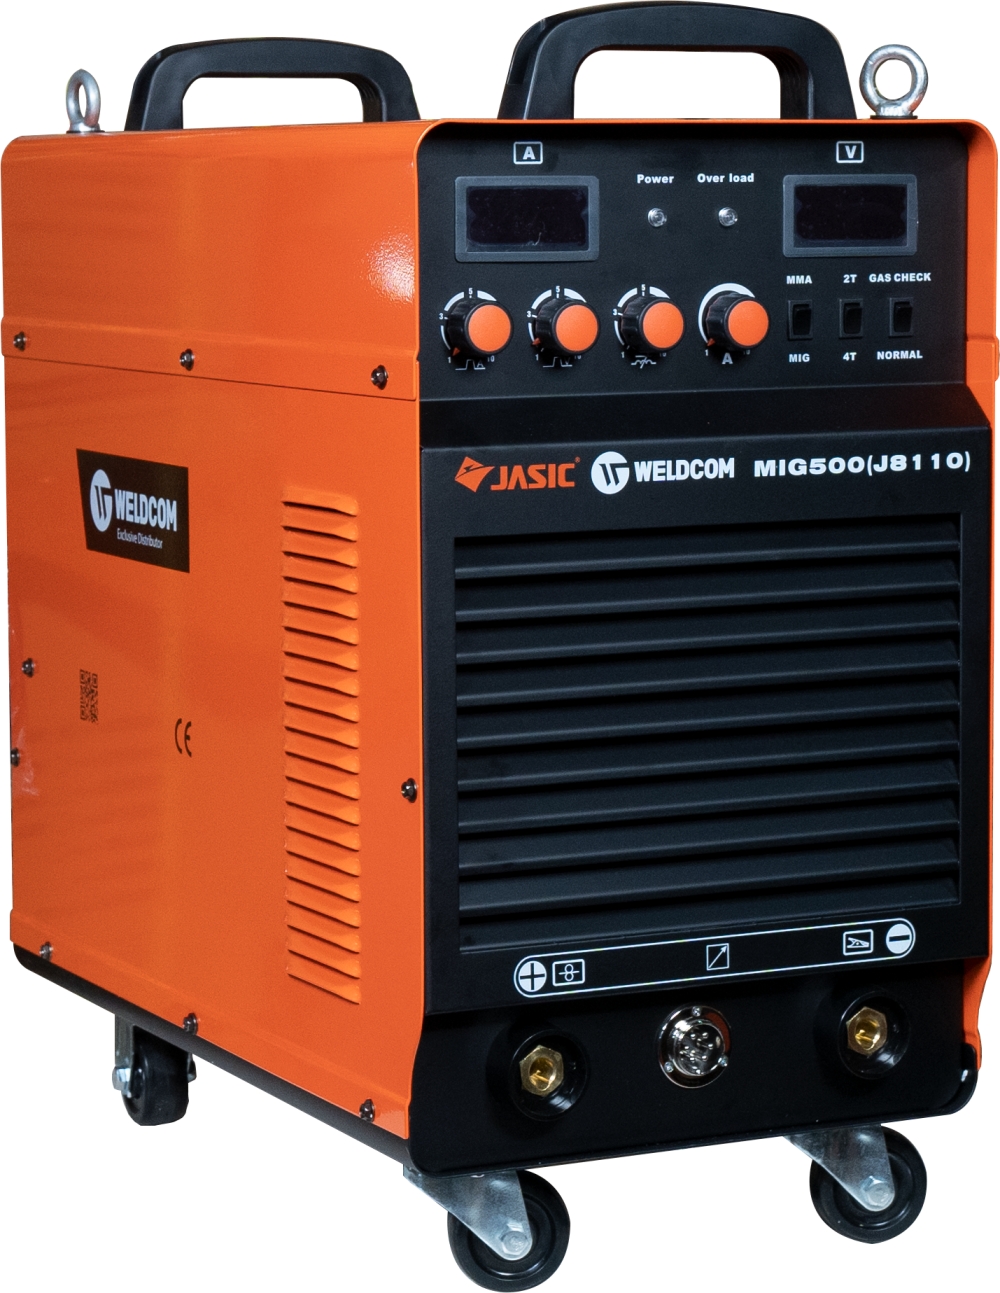 Máy hàn bán tự động JASIC  MIG-500 (J8110) - Nguồn 380V, Chức năng CO2/QUE, Có chế độ 2T/4T, đầu cấp dây rời có 20M cáp 70mm